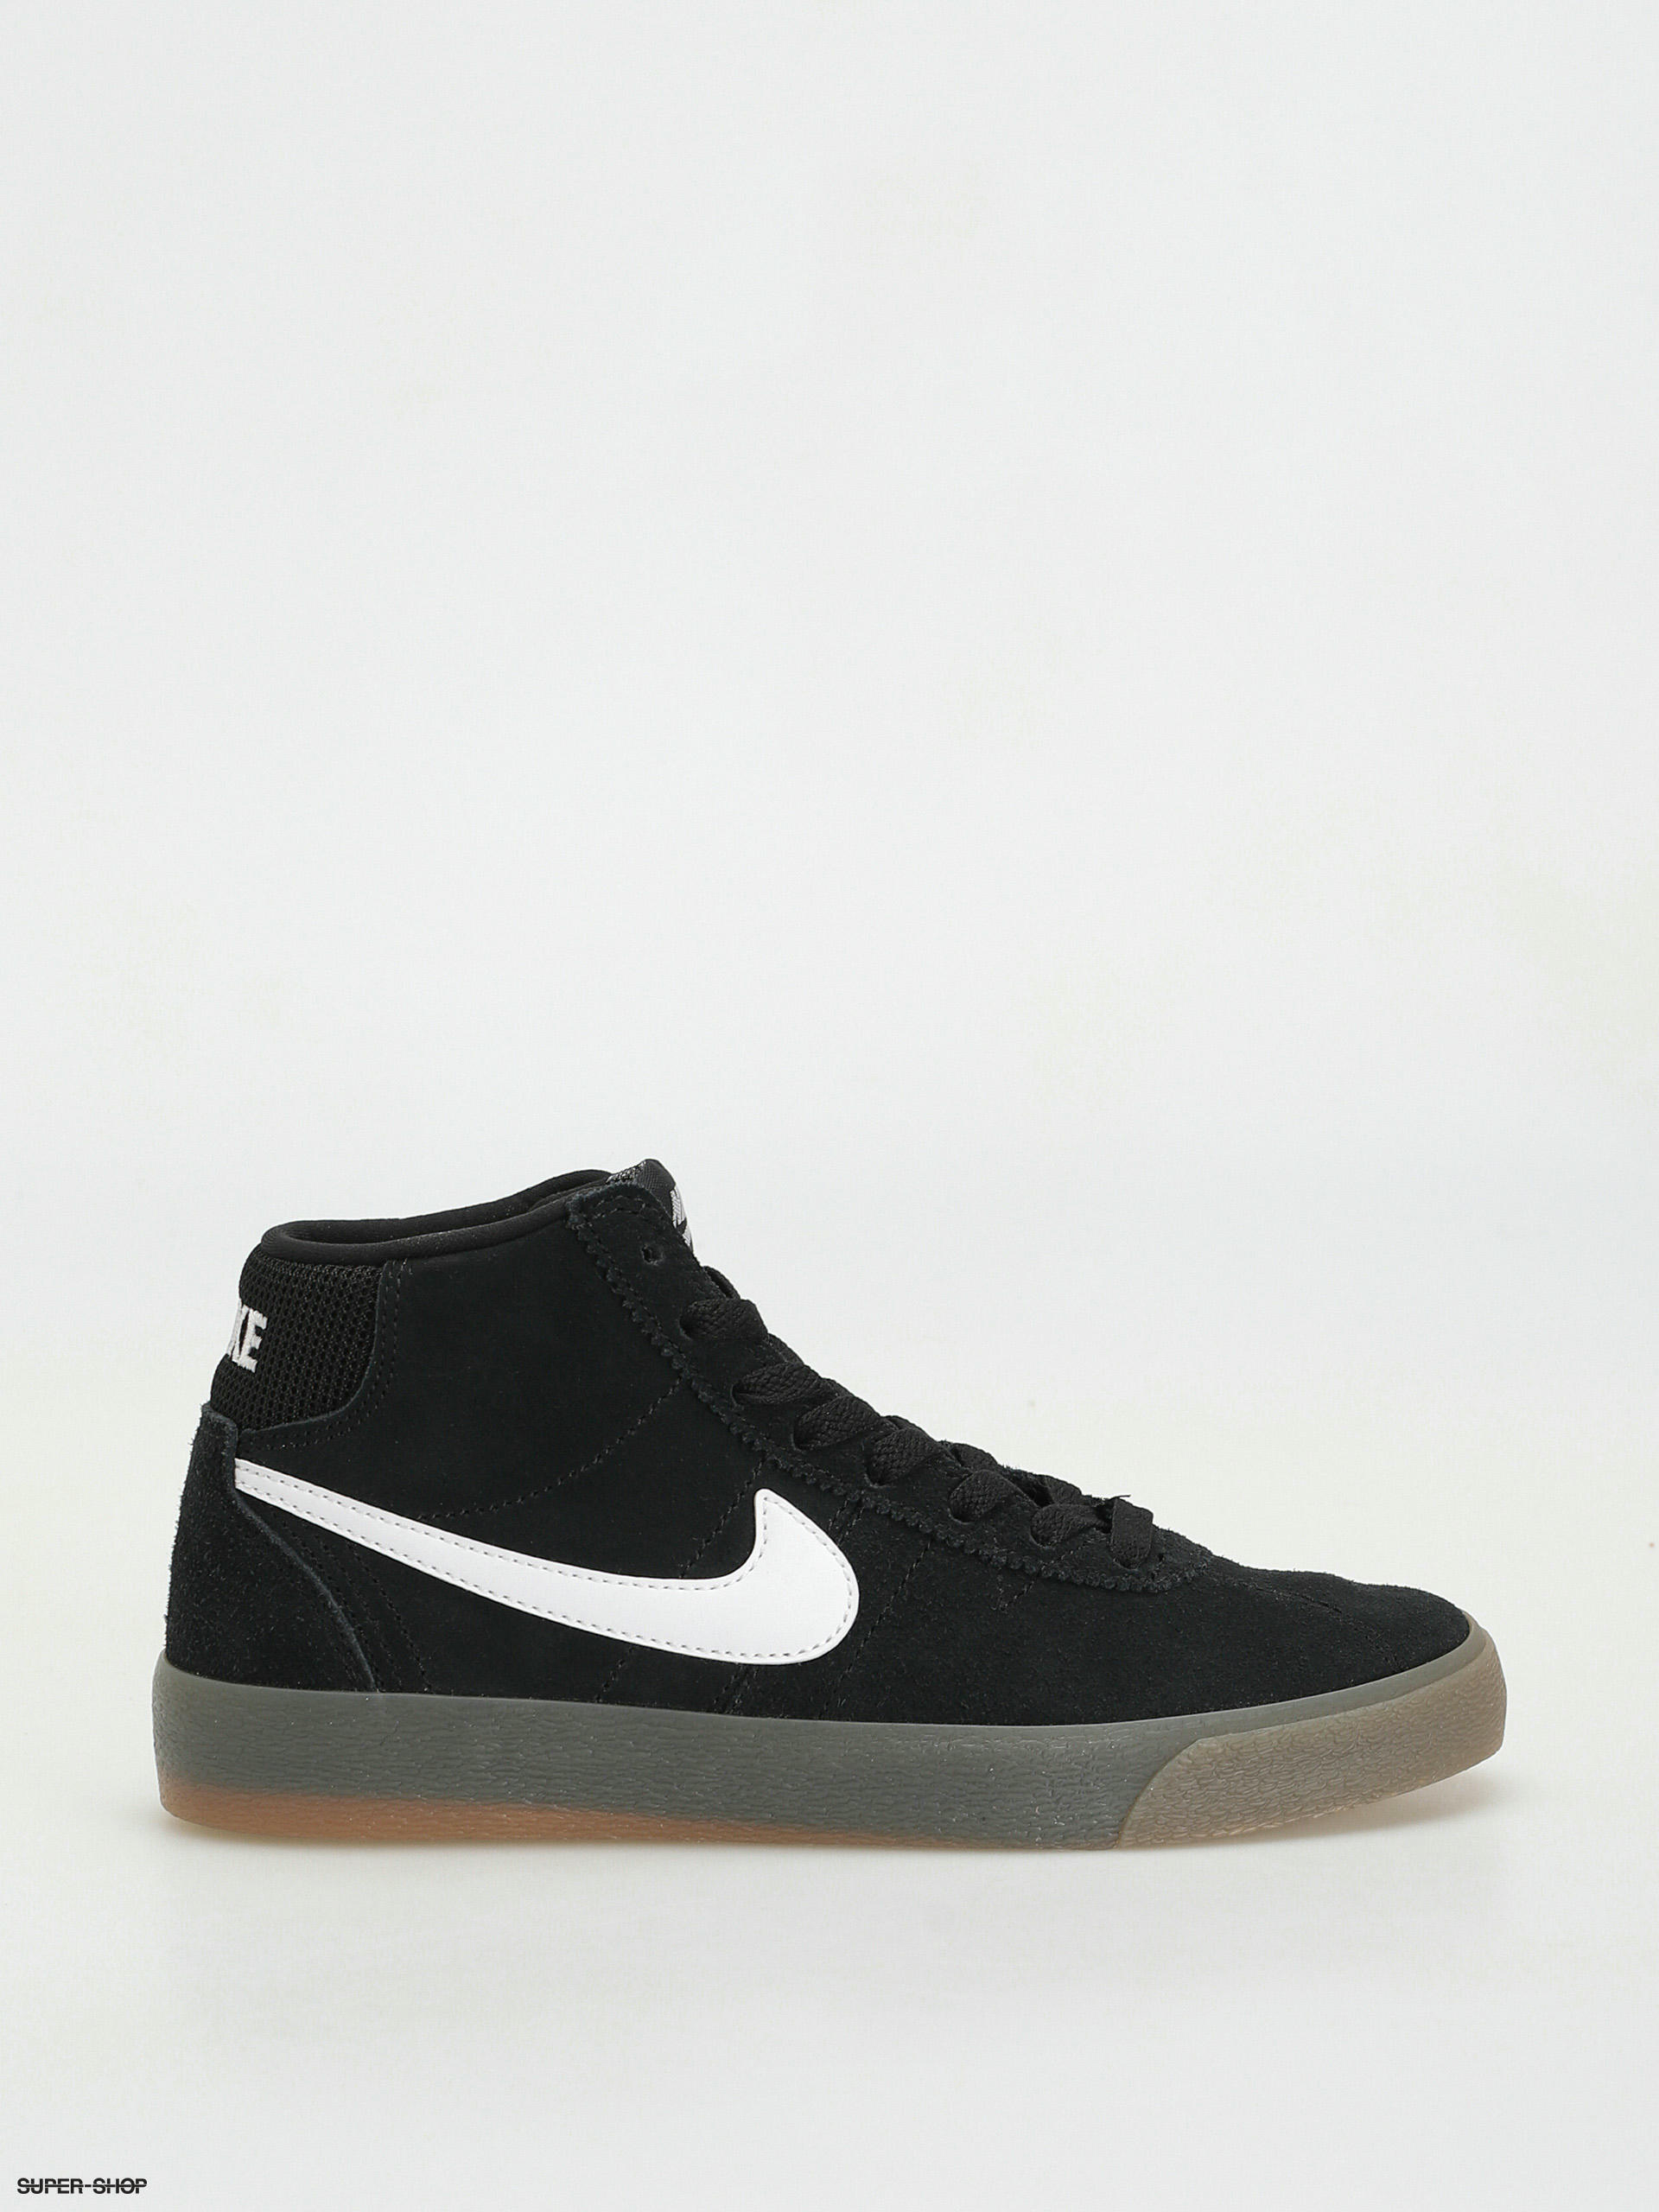 Nike Bruin High Shoes Wmn (black/white gum brown)